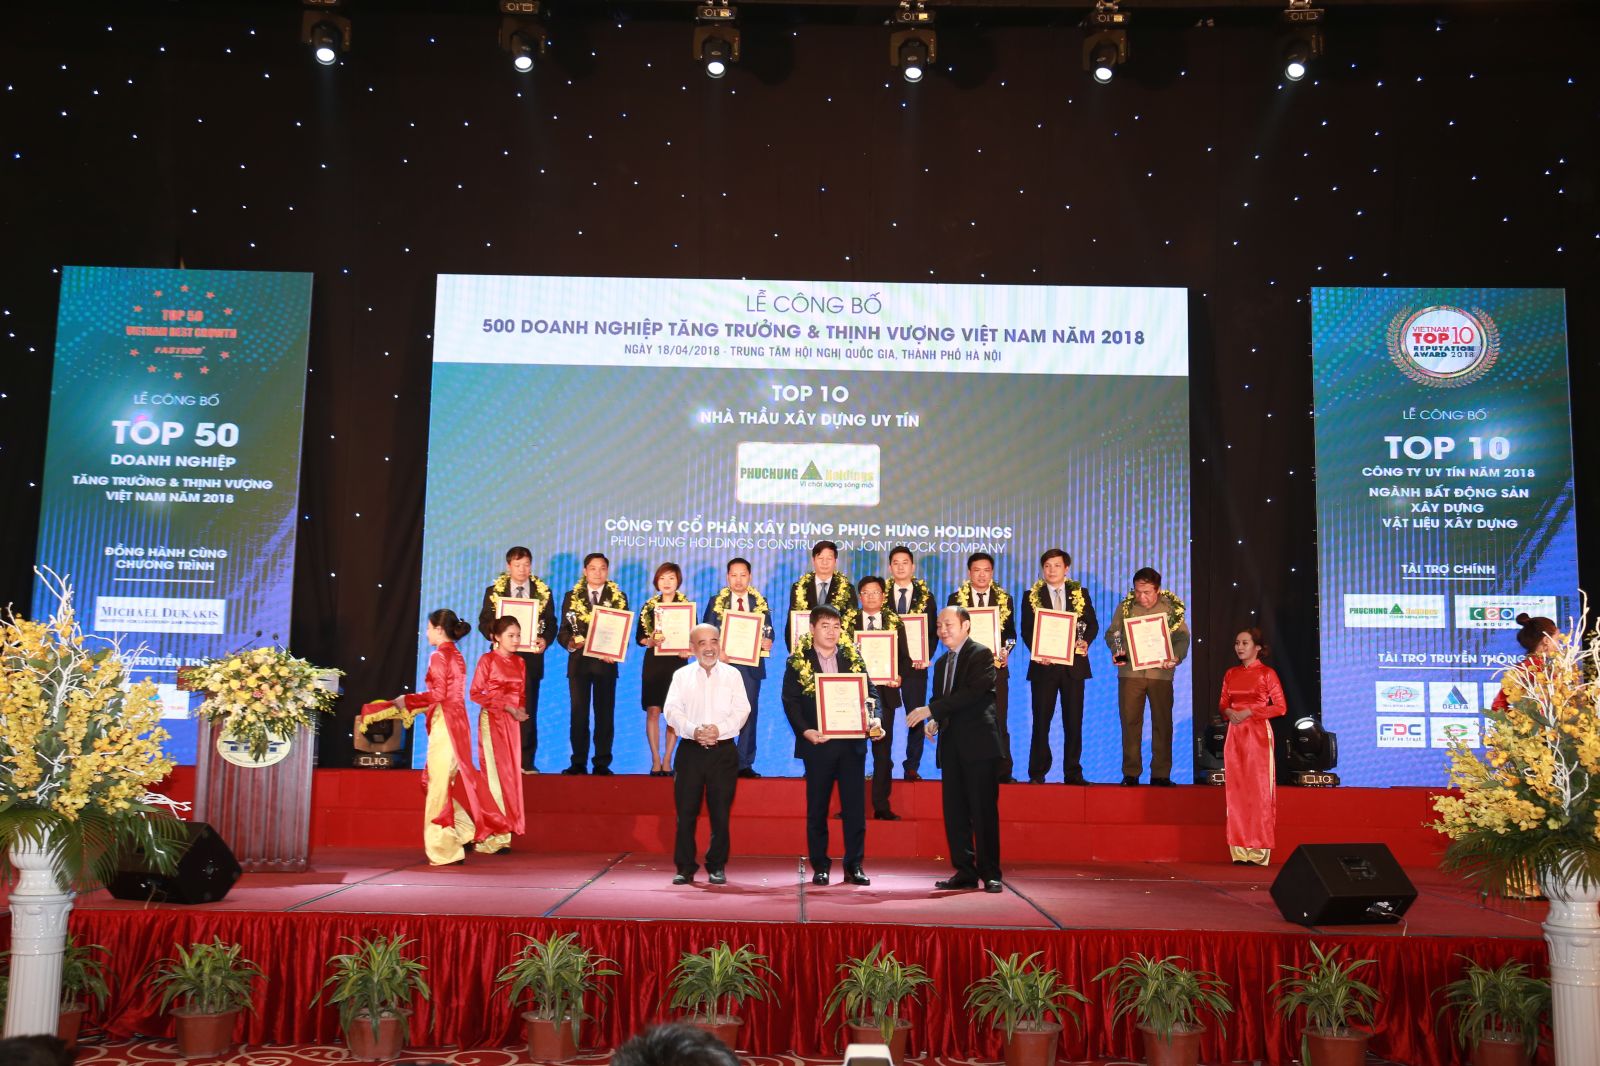 1. Ông Trần Huy Tưởng-Tổng giám đốc Phục Hưng Holdings nhận Top 10 Nhà thầu Xây dựng uy tín